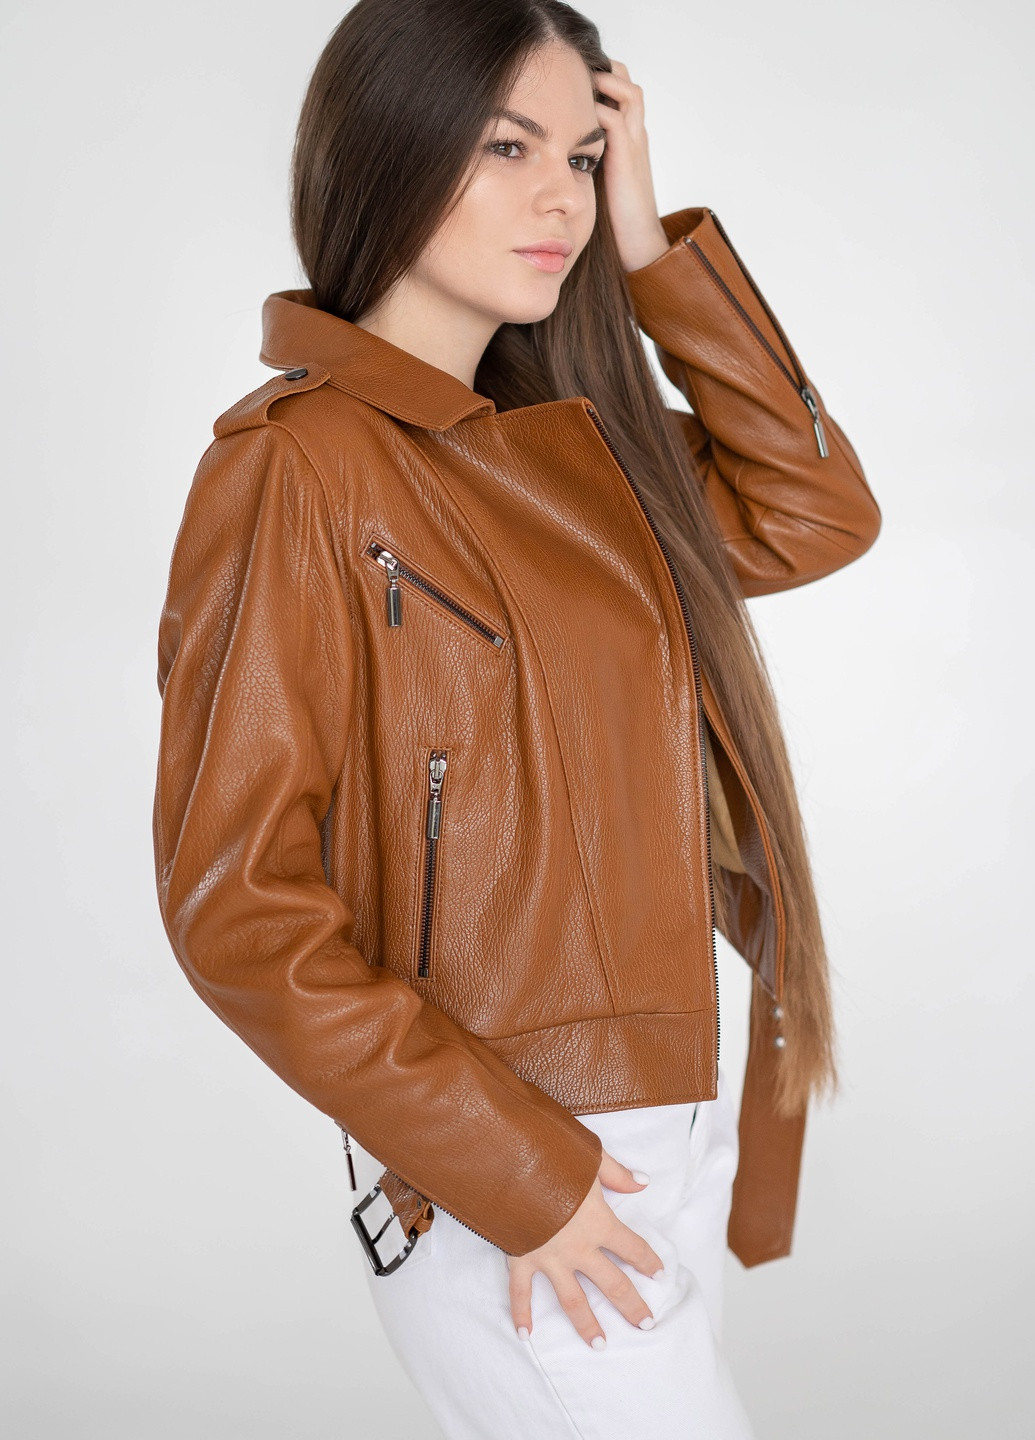 Светло-коричневая демисезонная женская кожаная куртка весна Fabio Monti